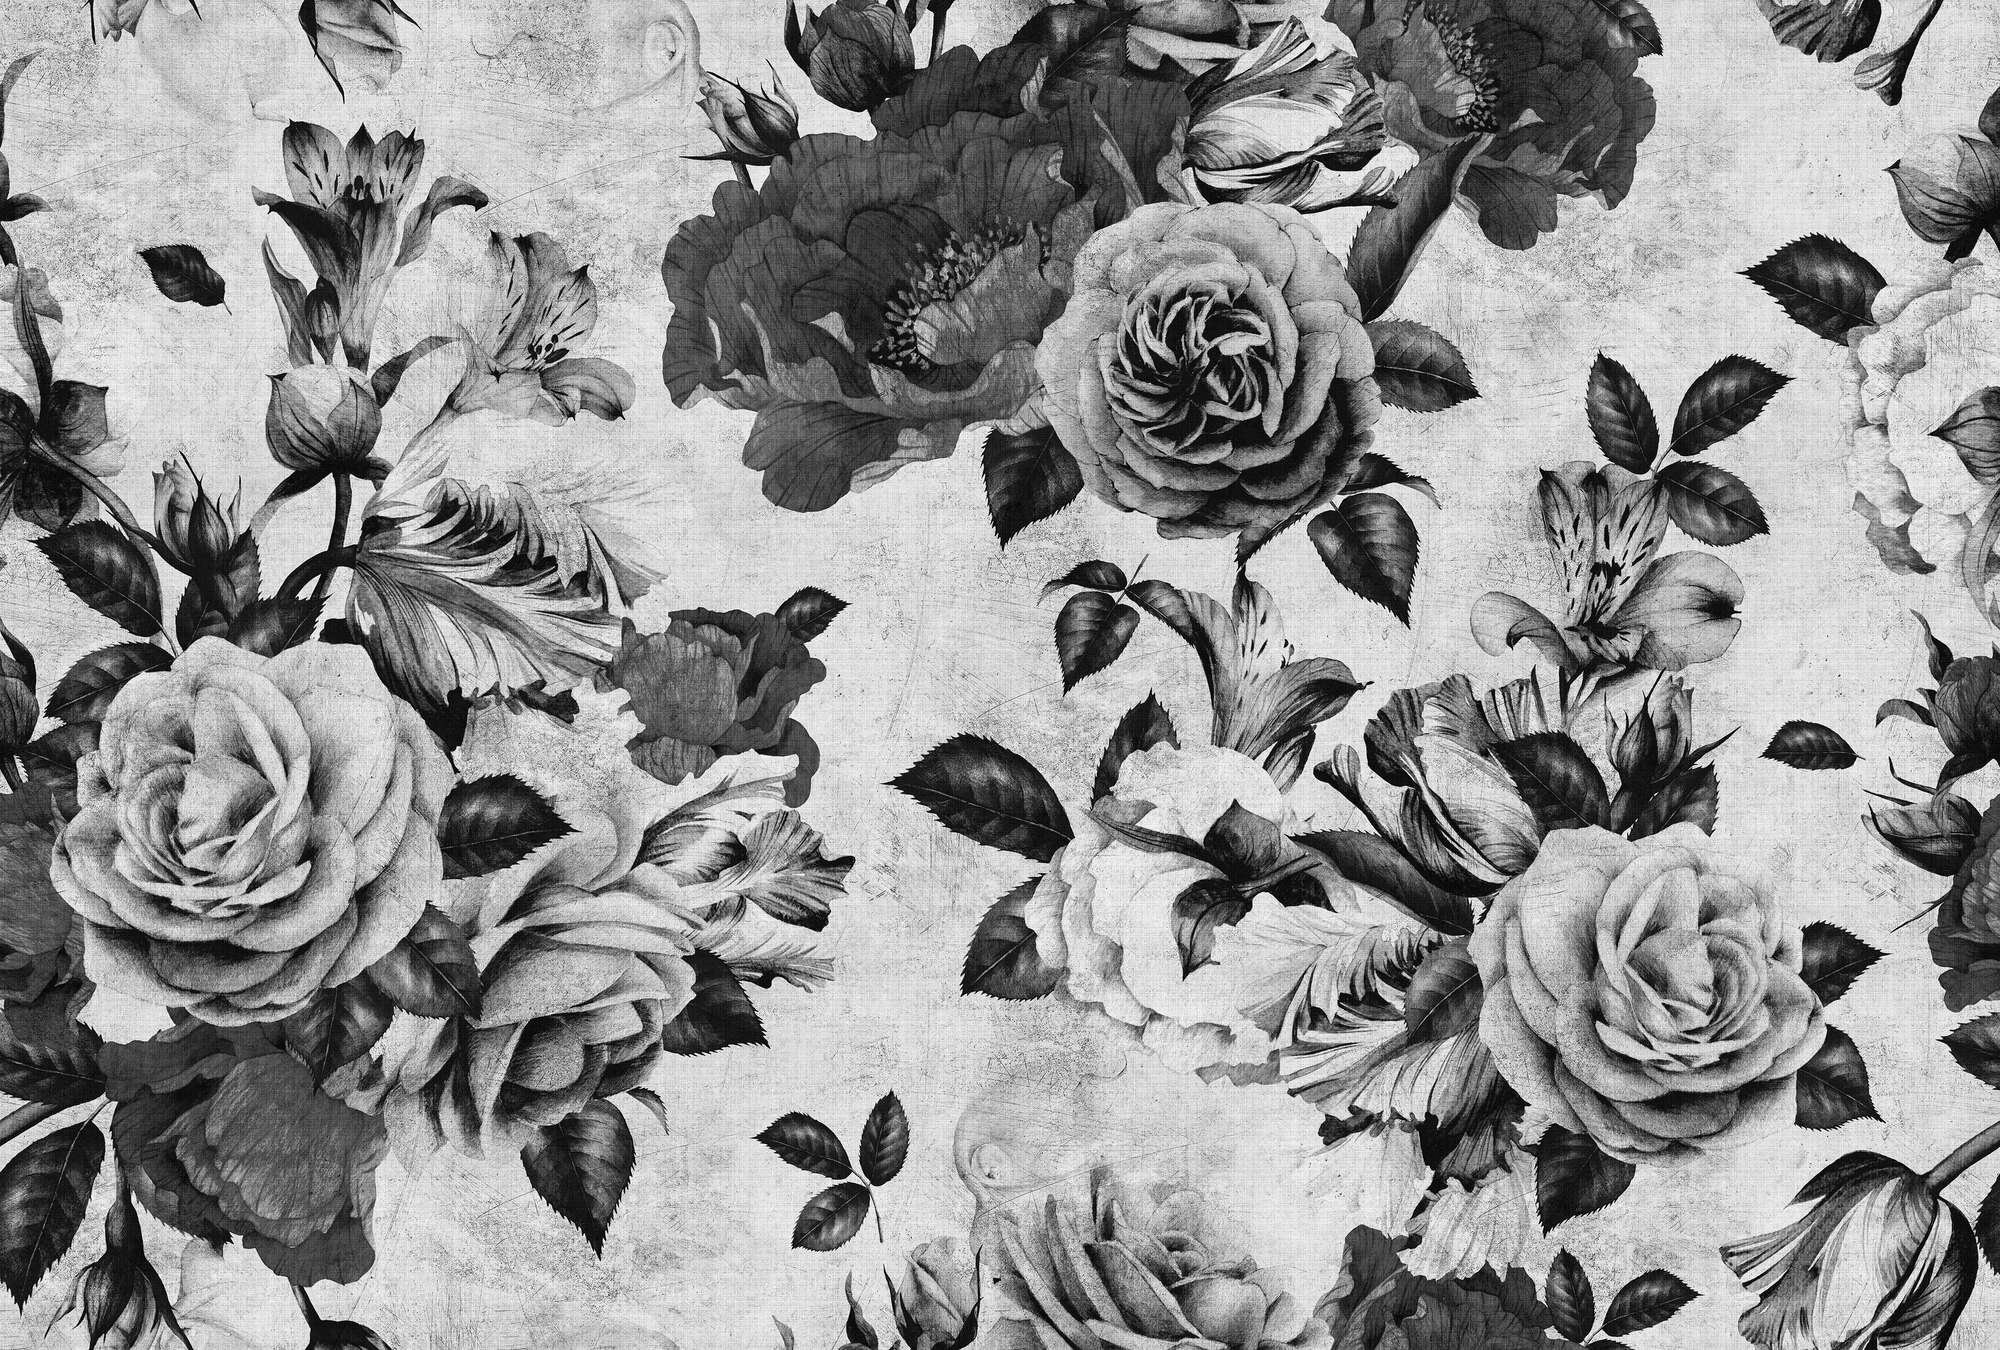             Spanish rose 1 - Carta da parati a rose con fiori bianchi e neri in struttura di lino naturale - vello liscio grigio, nero | madreperla
        